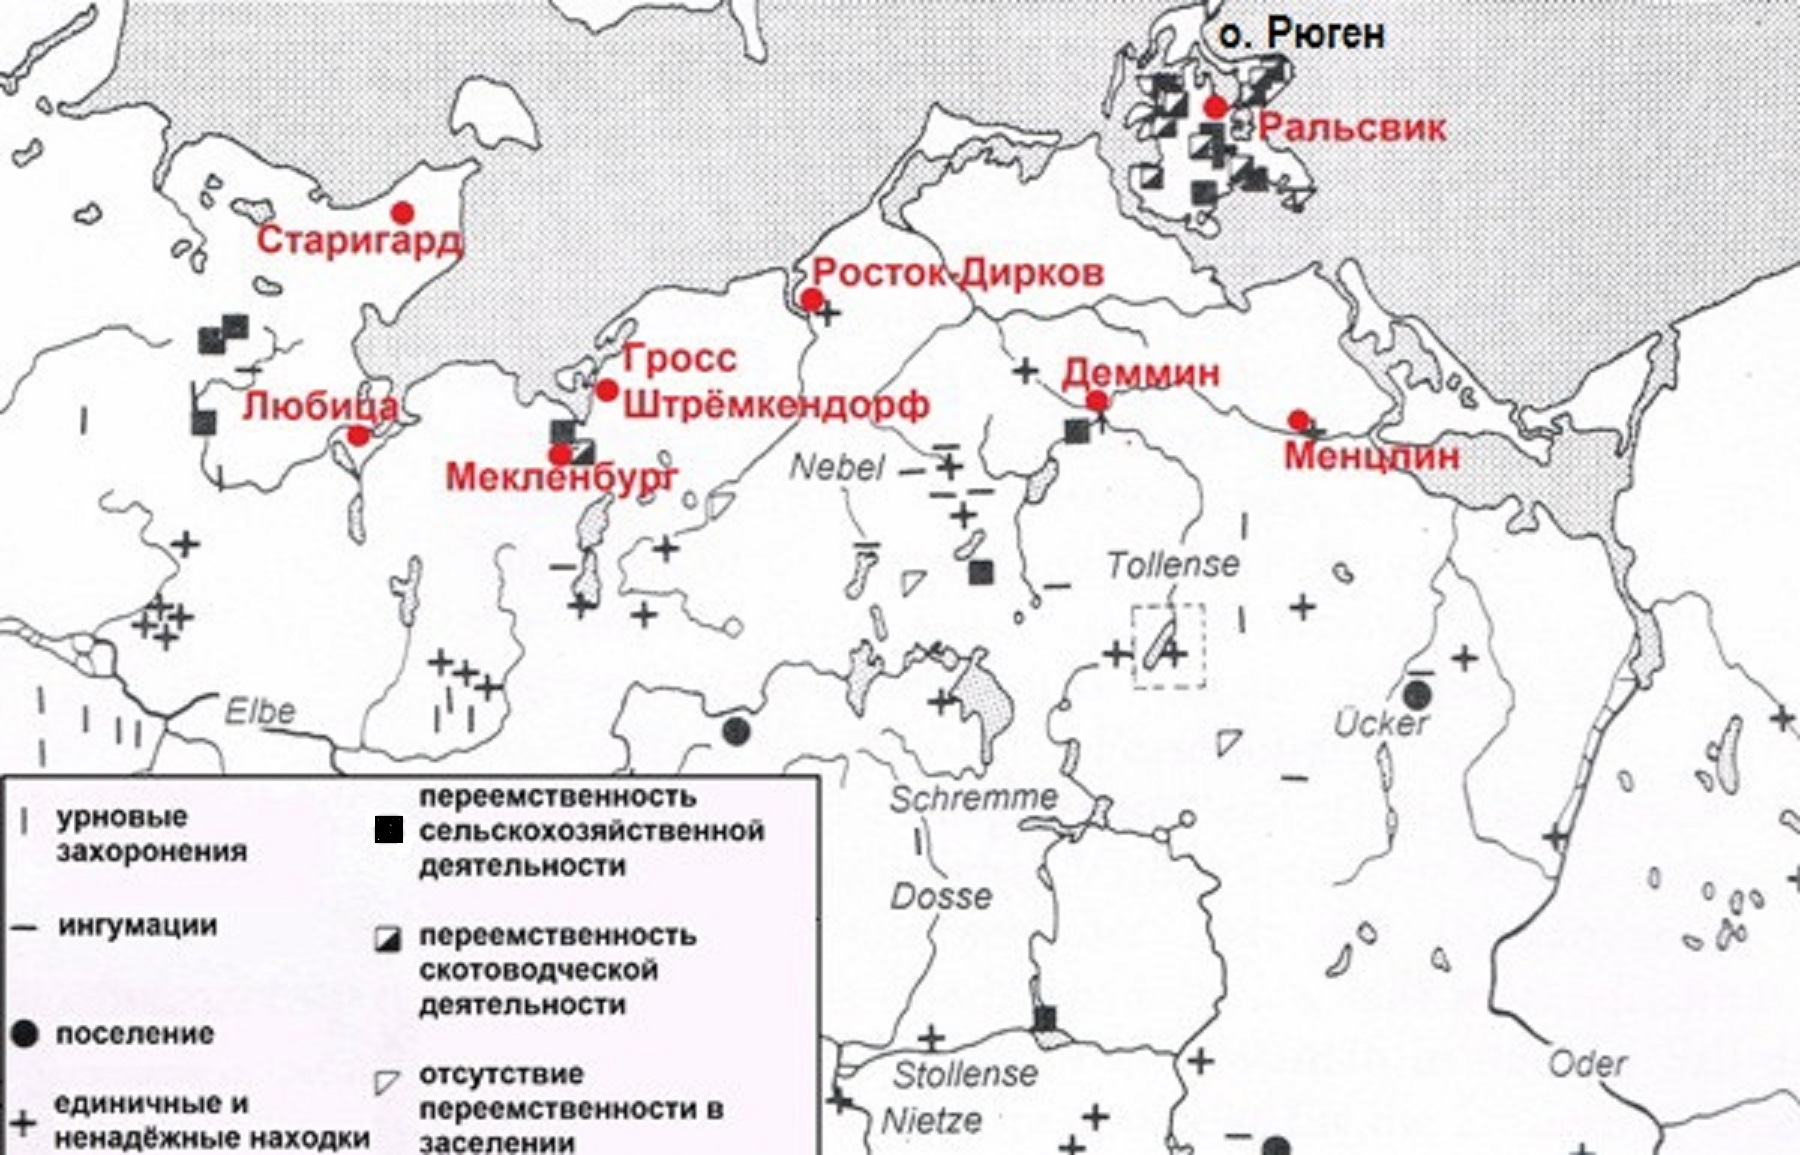 Преемственность между дославянским и славянским населением Южной Балтики по Й. Херрману